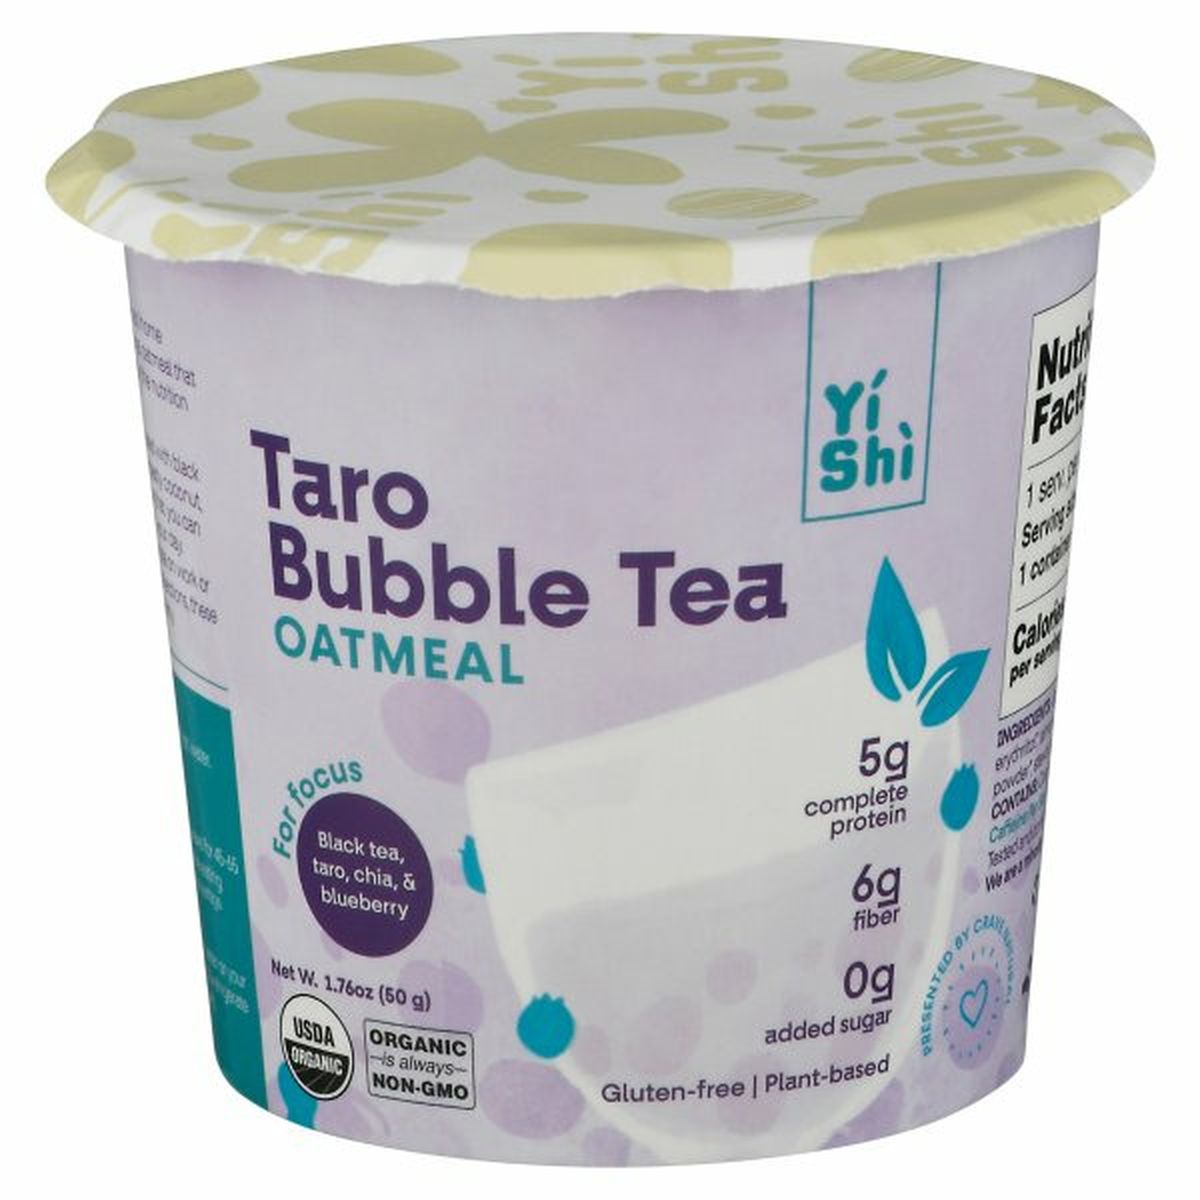 Calories in Yishi Oatmeal, Taro Bubble Tea